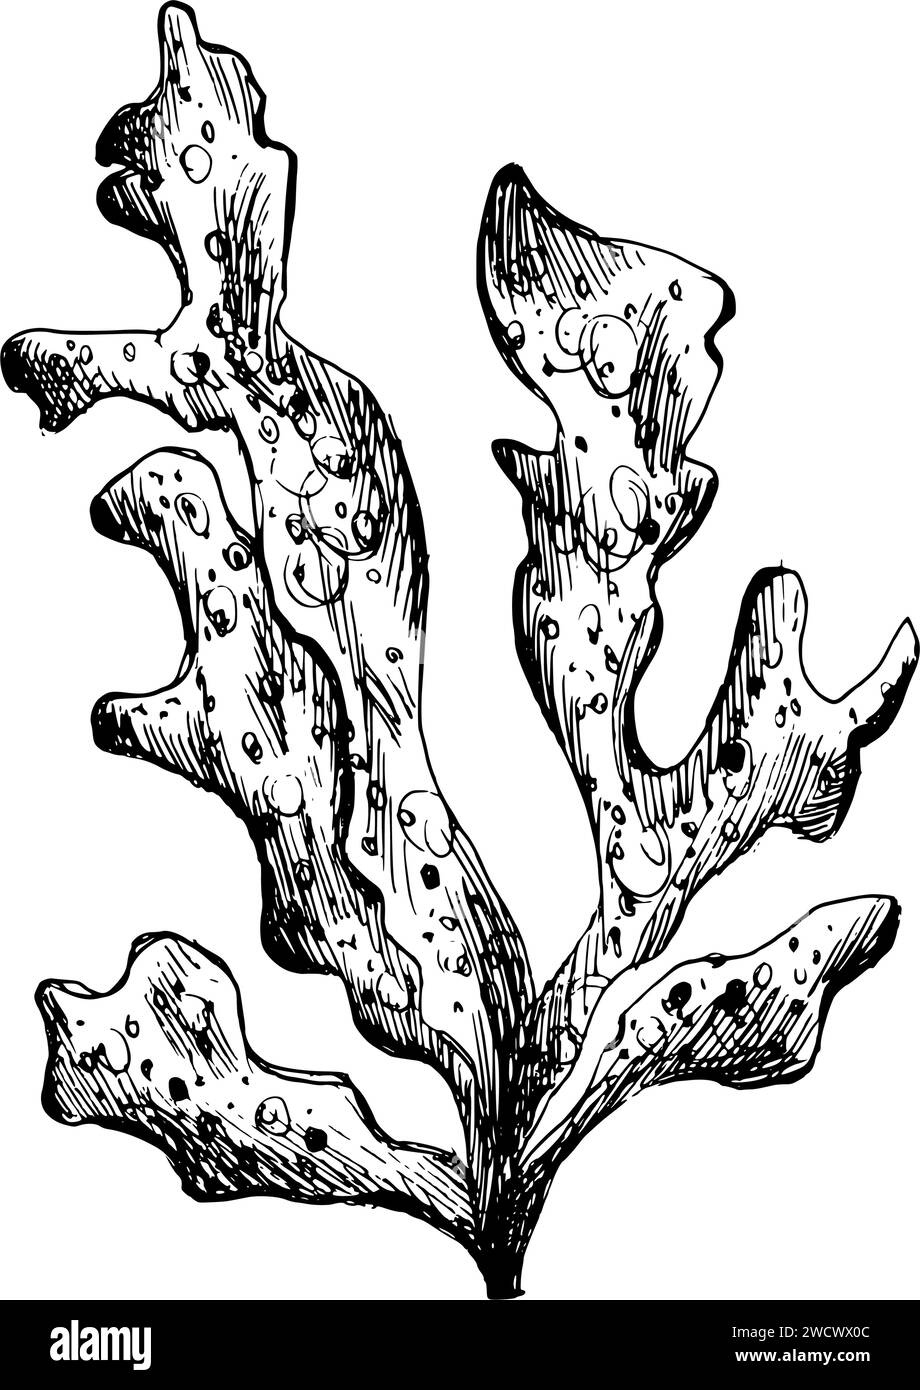 Unterwasser-Welt-Clipart mit einem Zweig von Meereskorallen. Grafische Abbildung, handgezeichnet mit schwarzer Tinte. Isolierter Objekt-EPS-Vektor. Stock Vektor